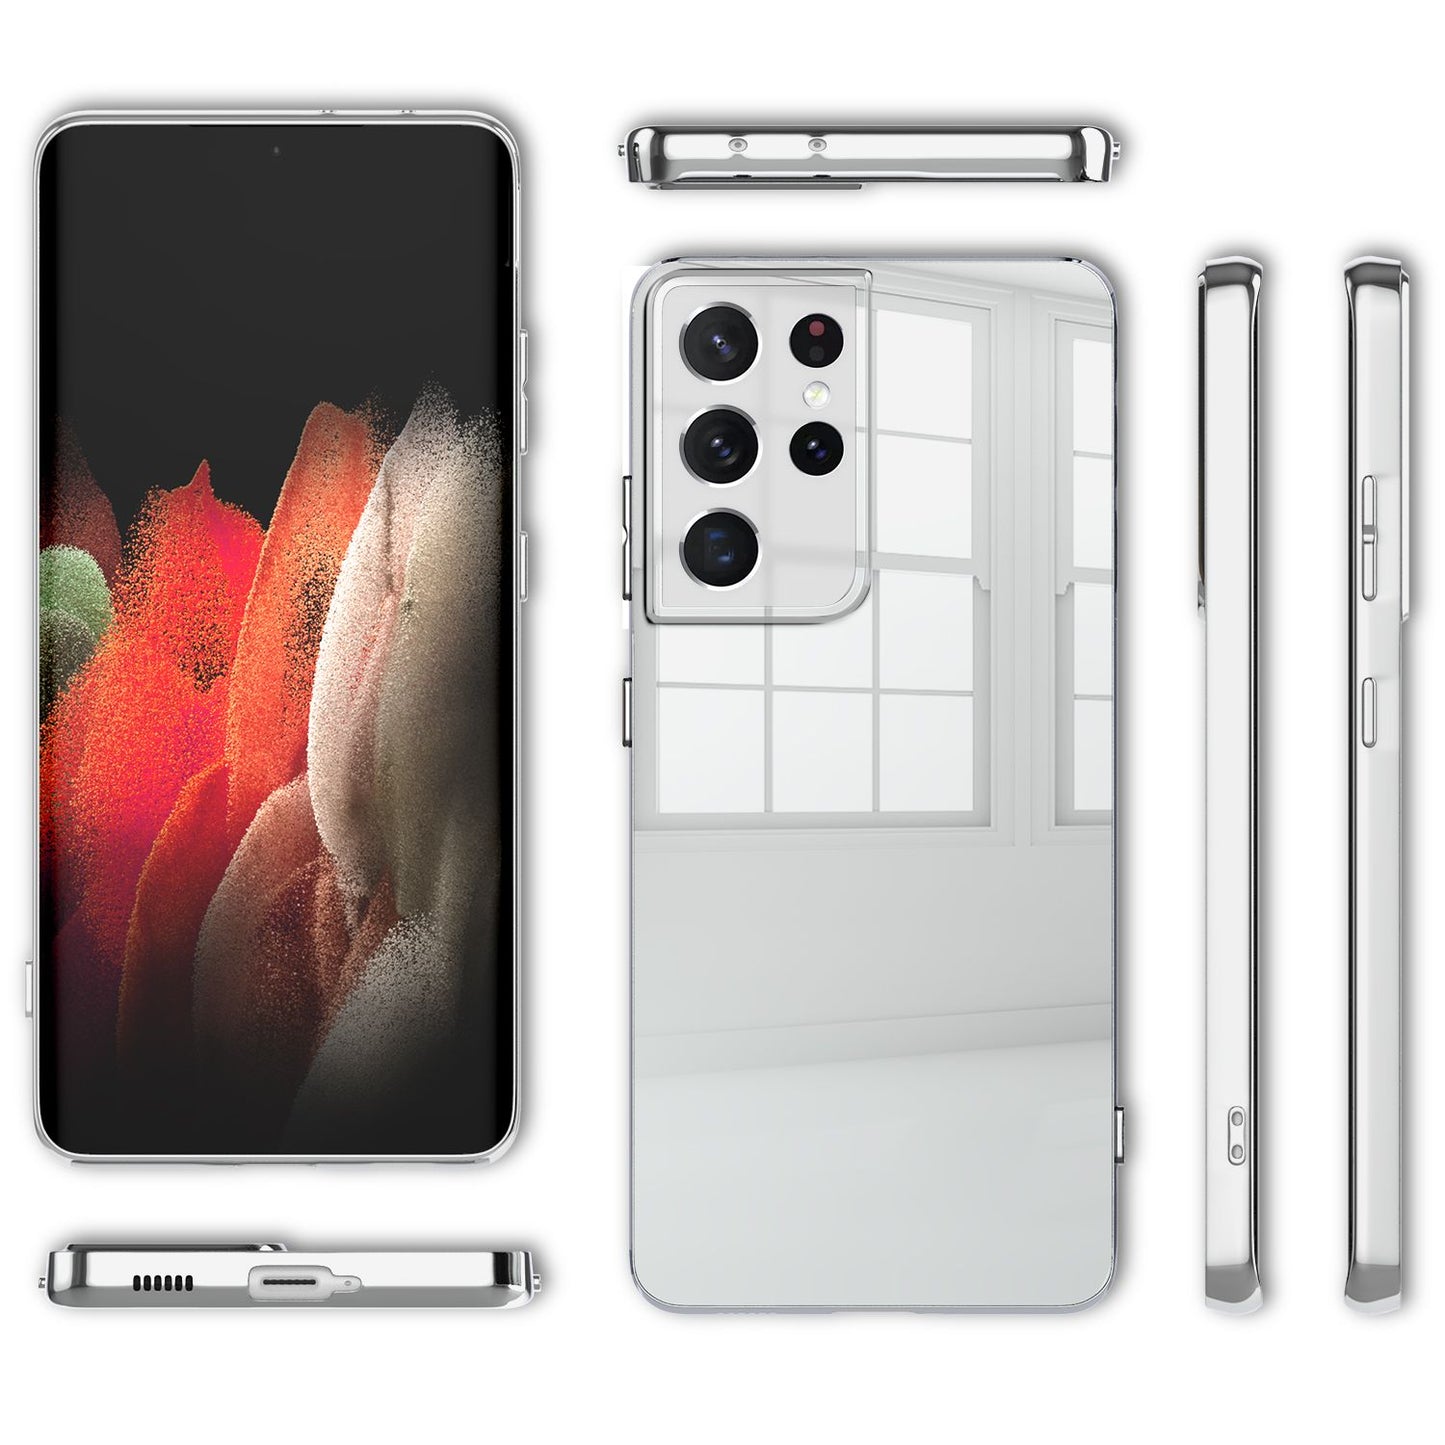 NALIA Spiegel Hartglas Case für Samsung Galaxy S21 Ultra, Klarer Spiegeleffekt Mirror Hardcase Kratzfest, 9H Tempered Glass & Silikon Bumper, Dünne Schutzhülle Glashülle Handyhülle